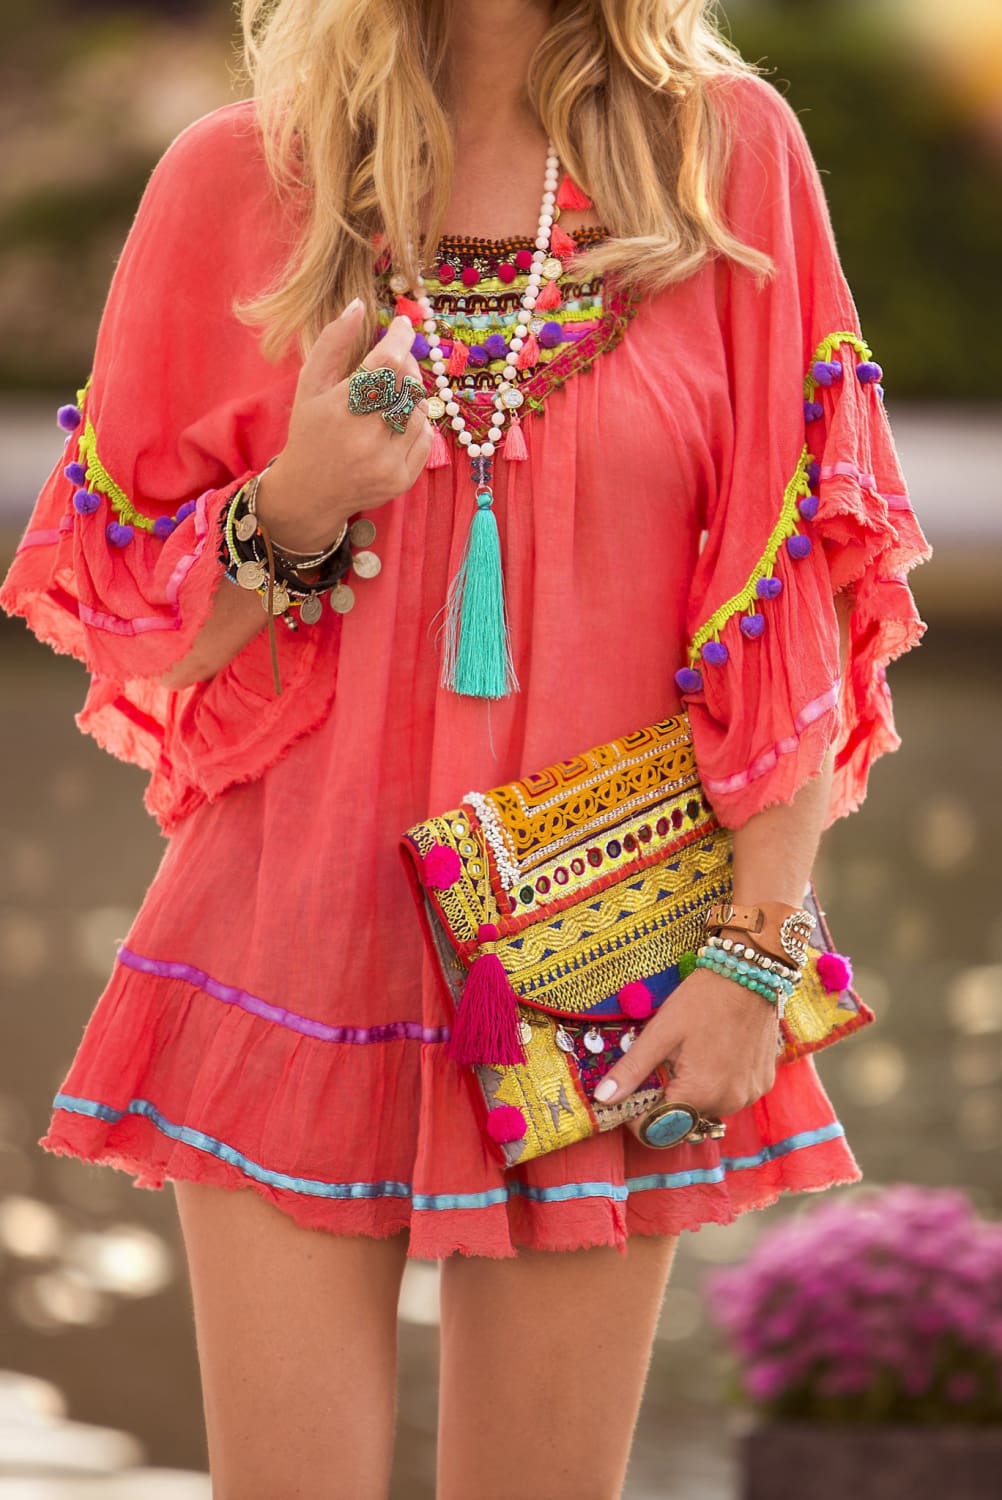 Boho Luxo: A Moda Hippie Chic